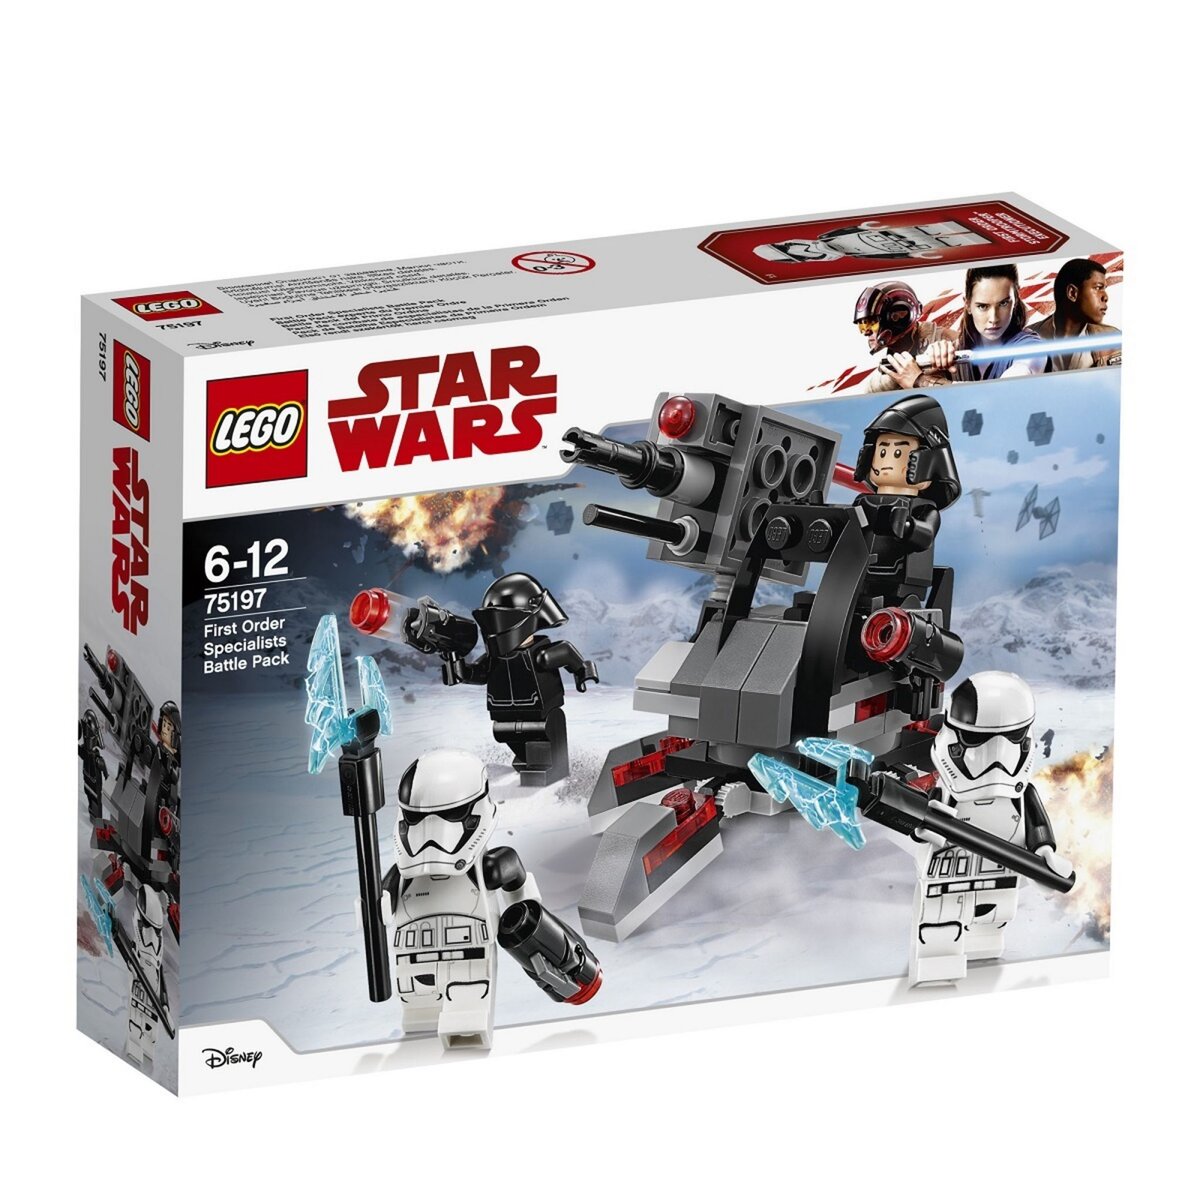 LEGO 75197 Star Wars - Battle Pack experts du Premier Ordre